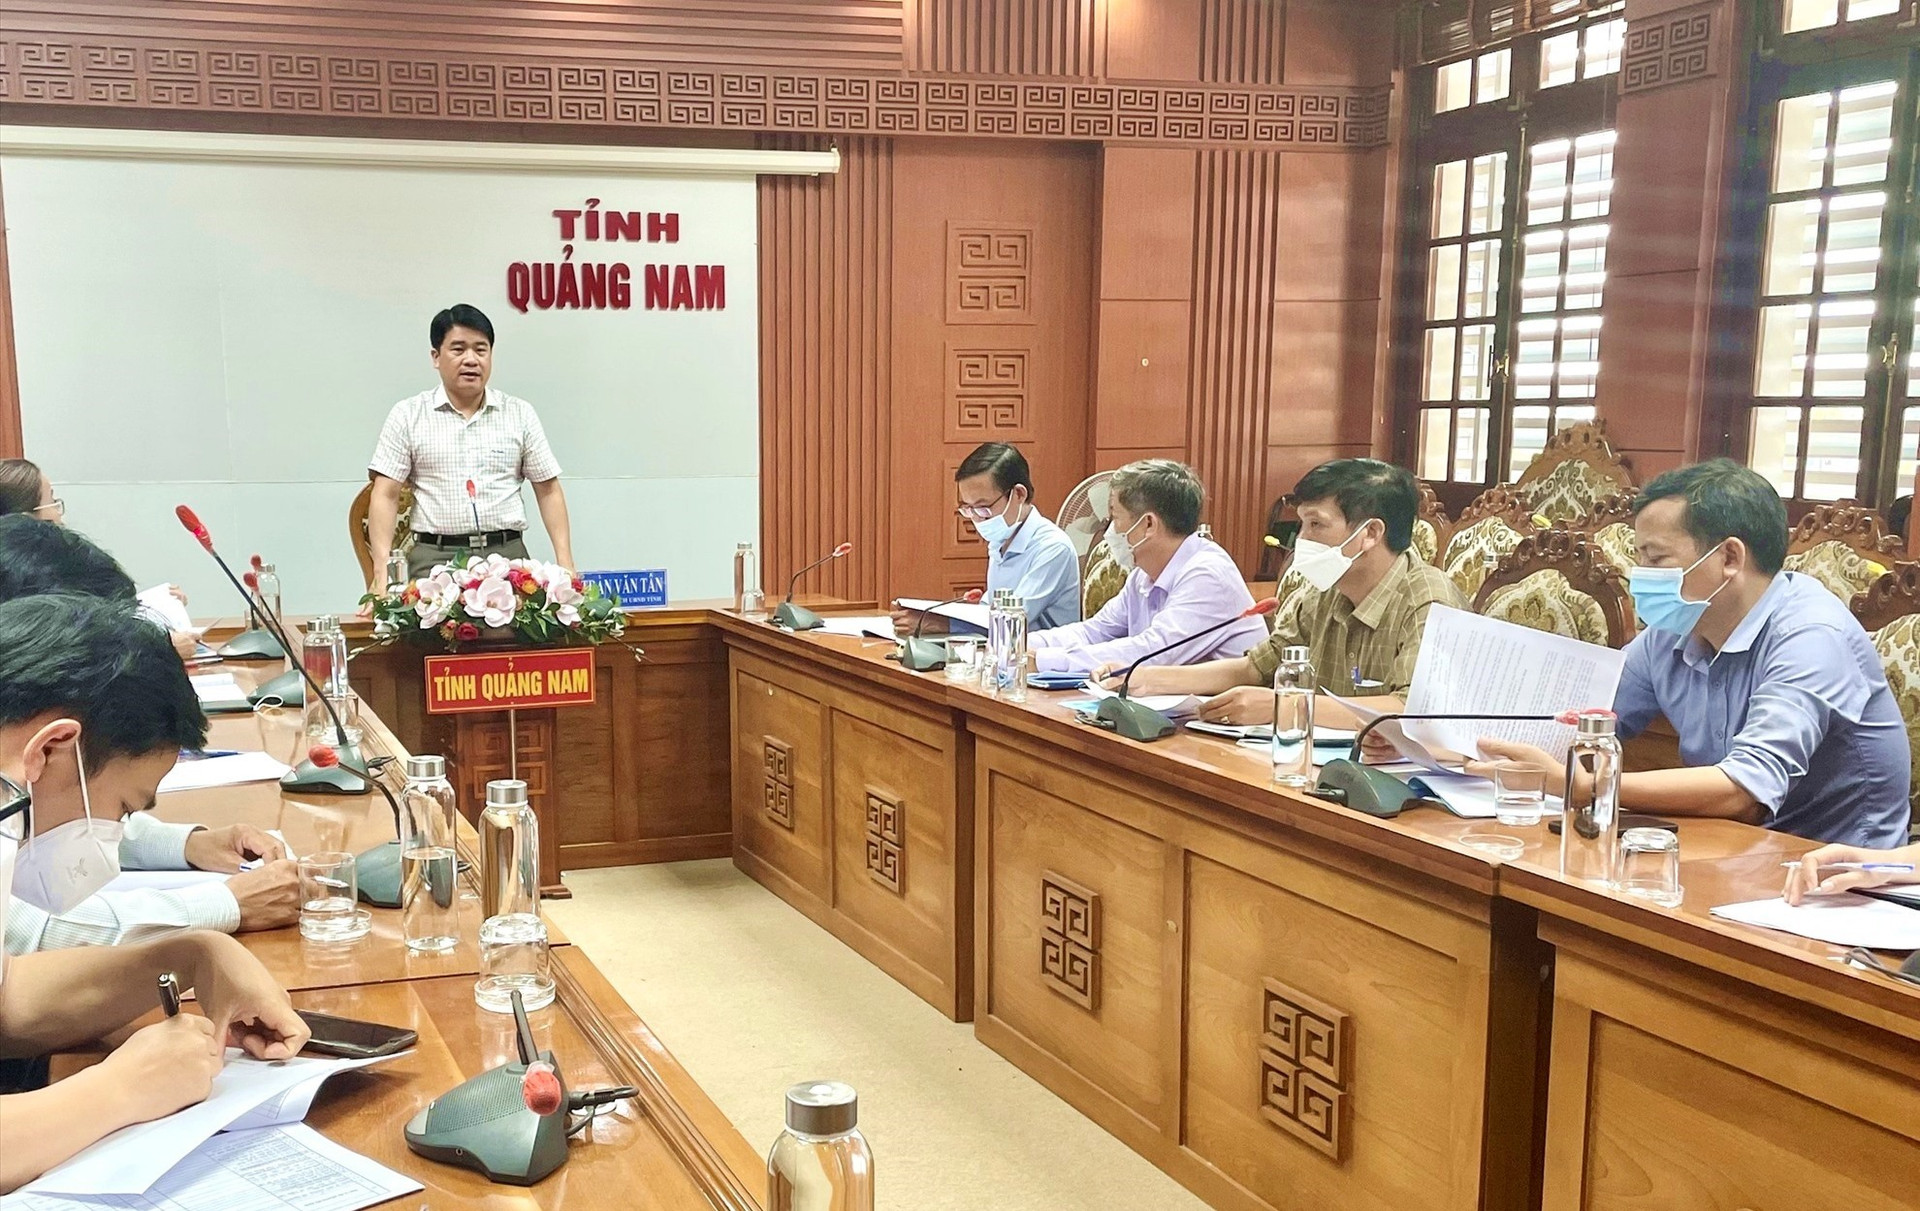 Phó Chủ tịch UBND tỉnh Trần Văn Tân đề nghị UBND huyện Phú Ninh hoàn thiện Đề án vị trí việc làm. Ảnh: H.Đ